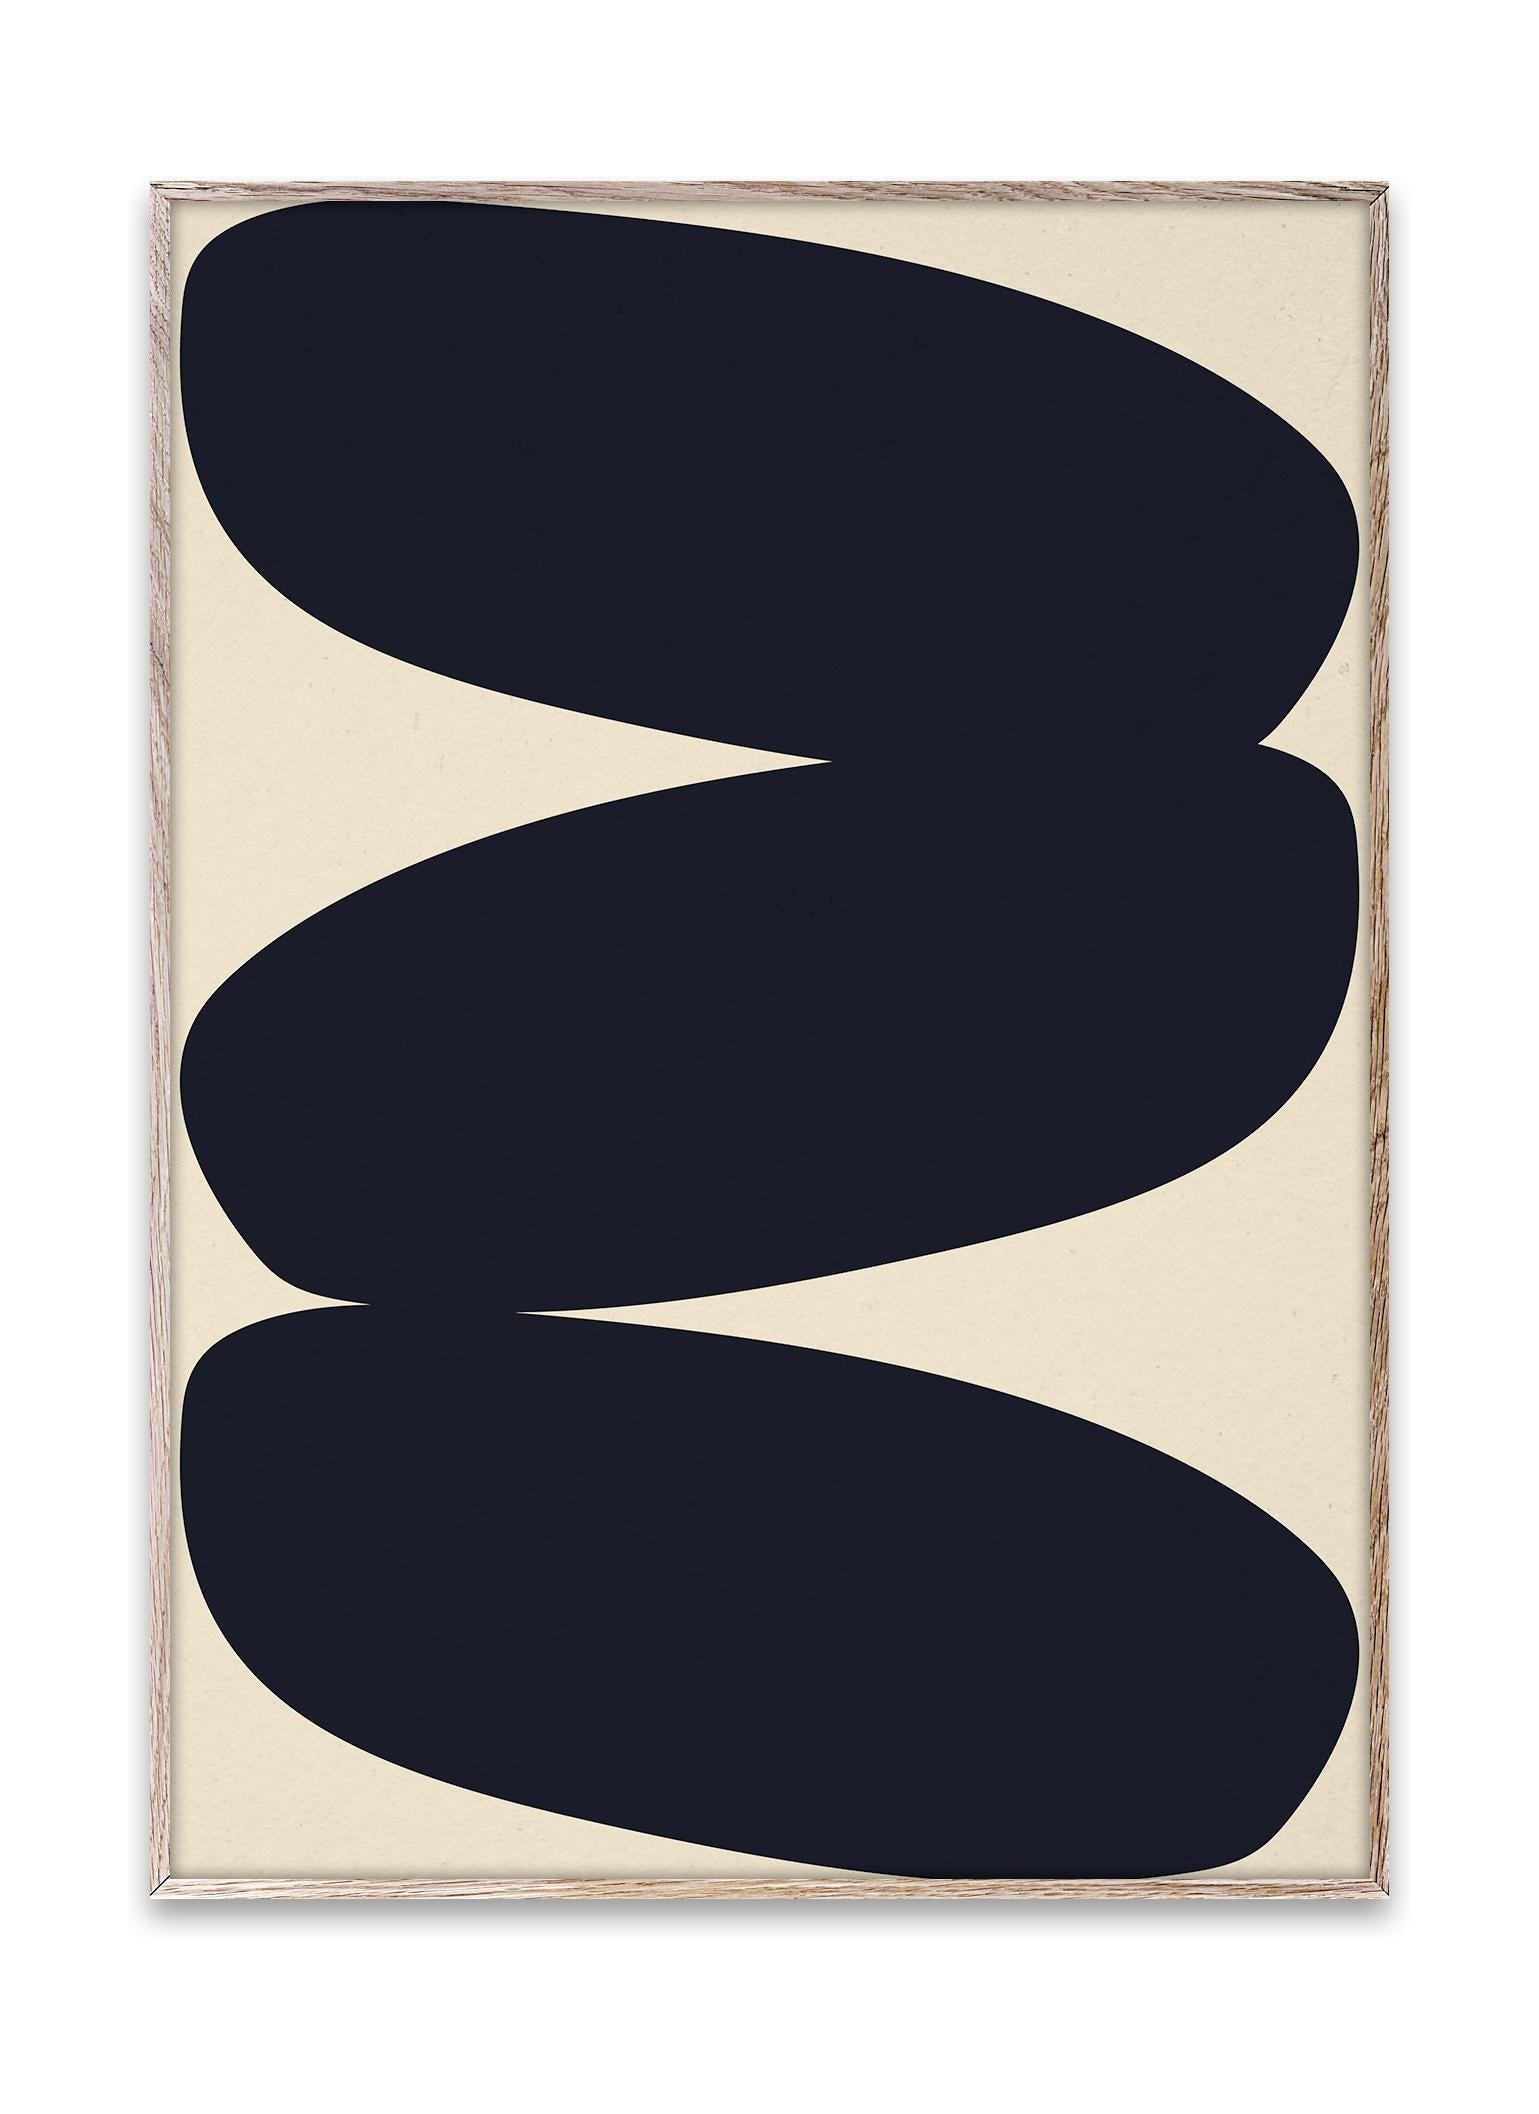 Pappírs sameiginleg föst form 01 veggspjald, 50x70 cm